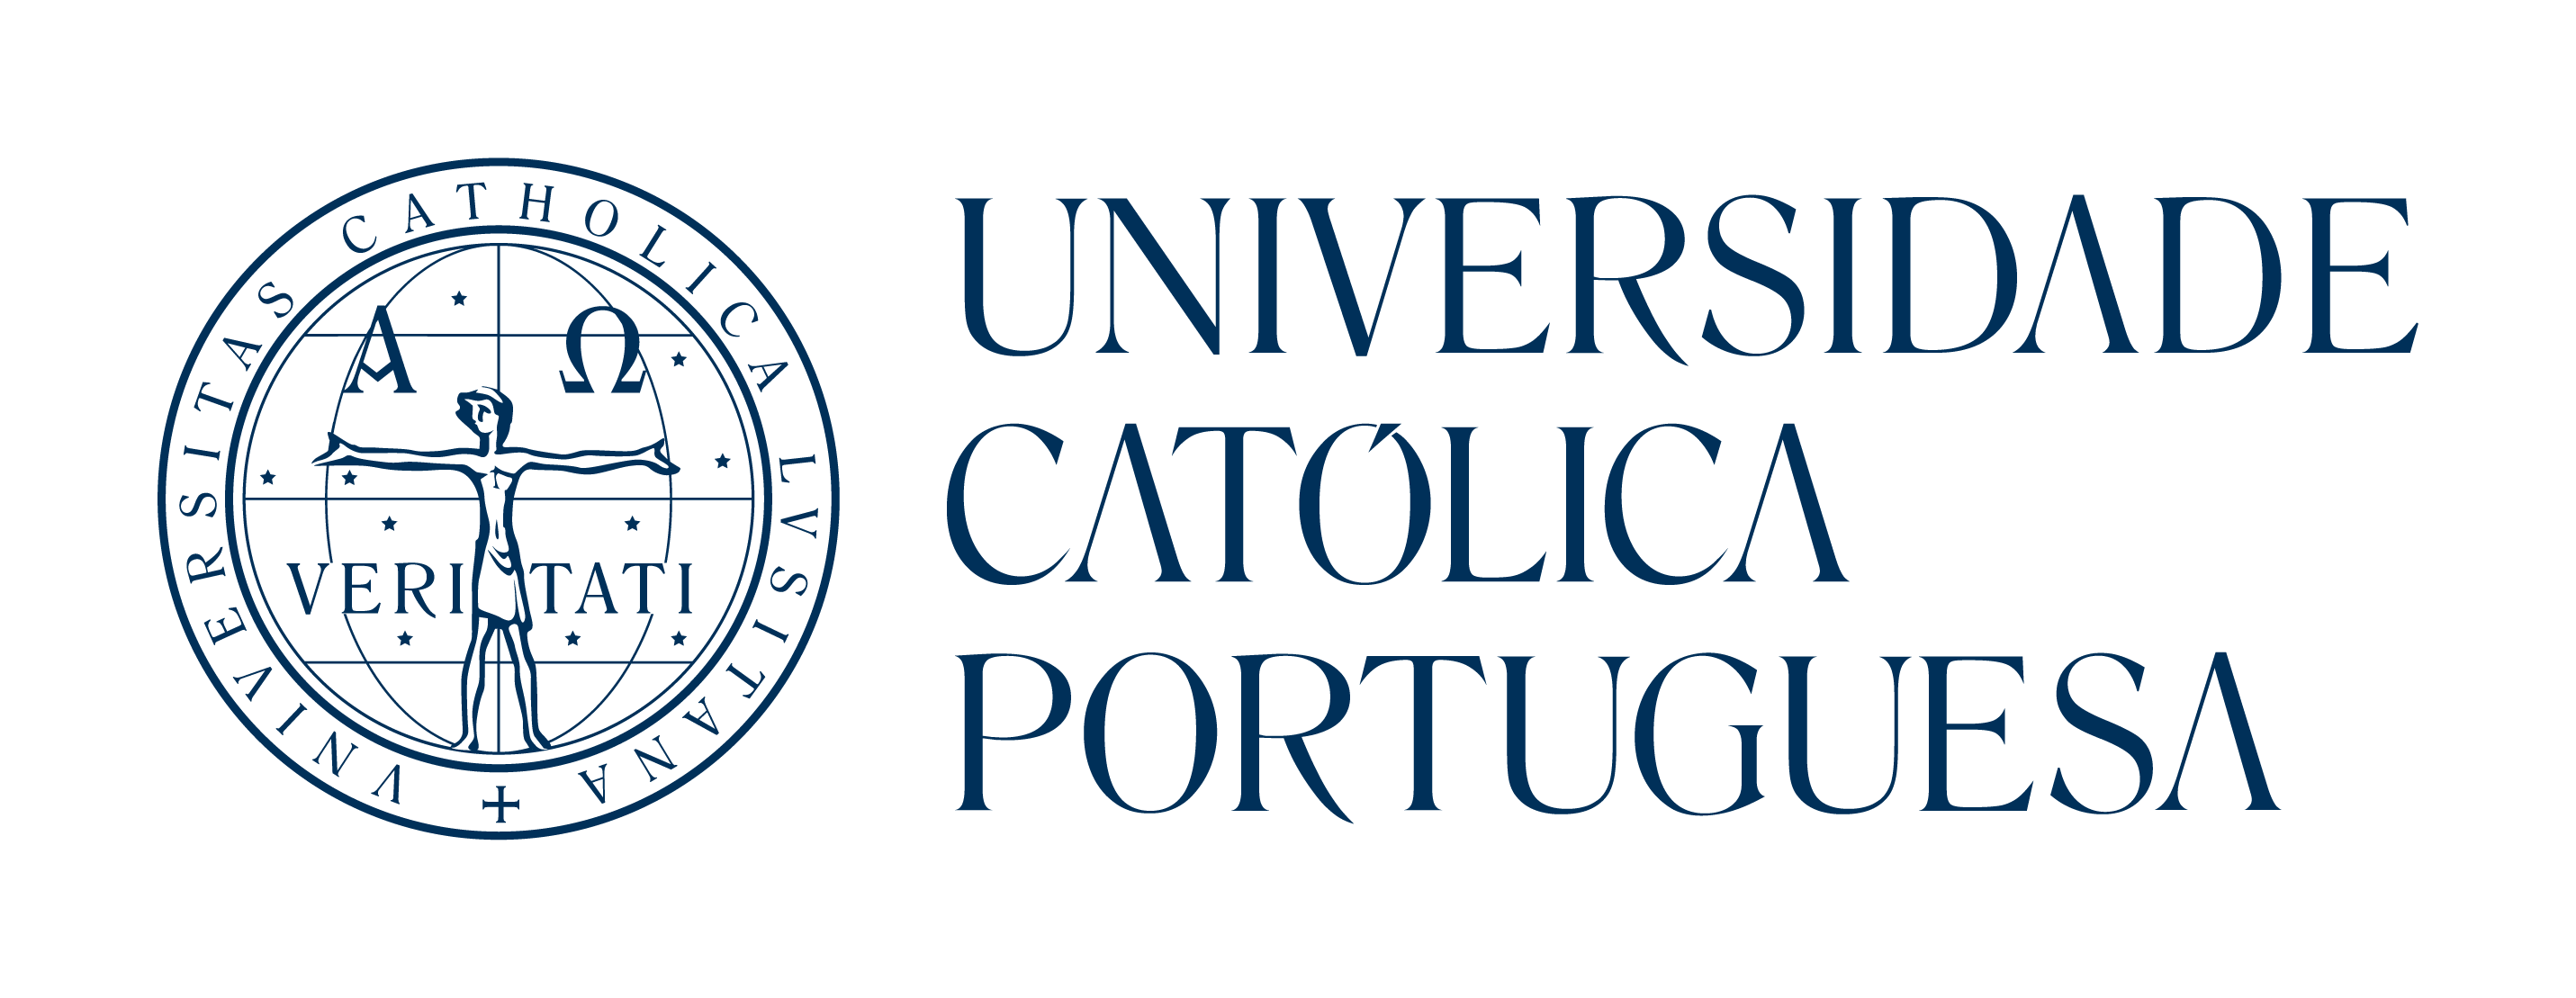 Universidade Catolica Portuguesa logo